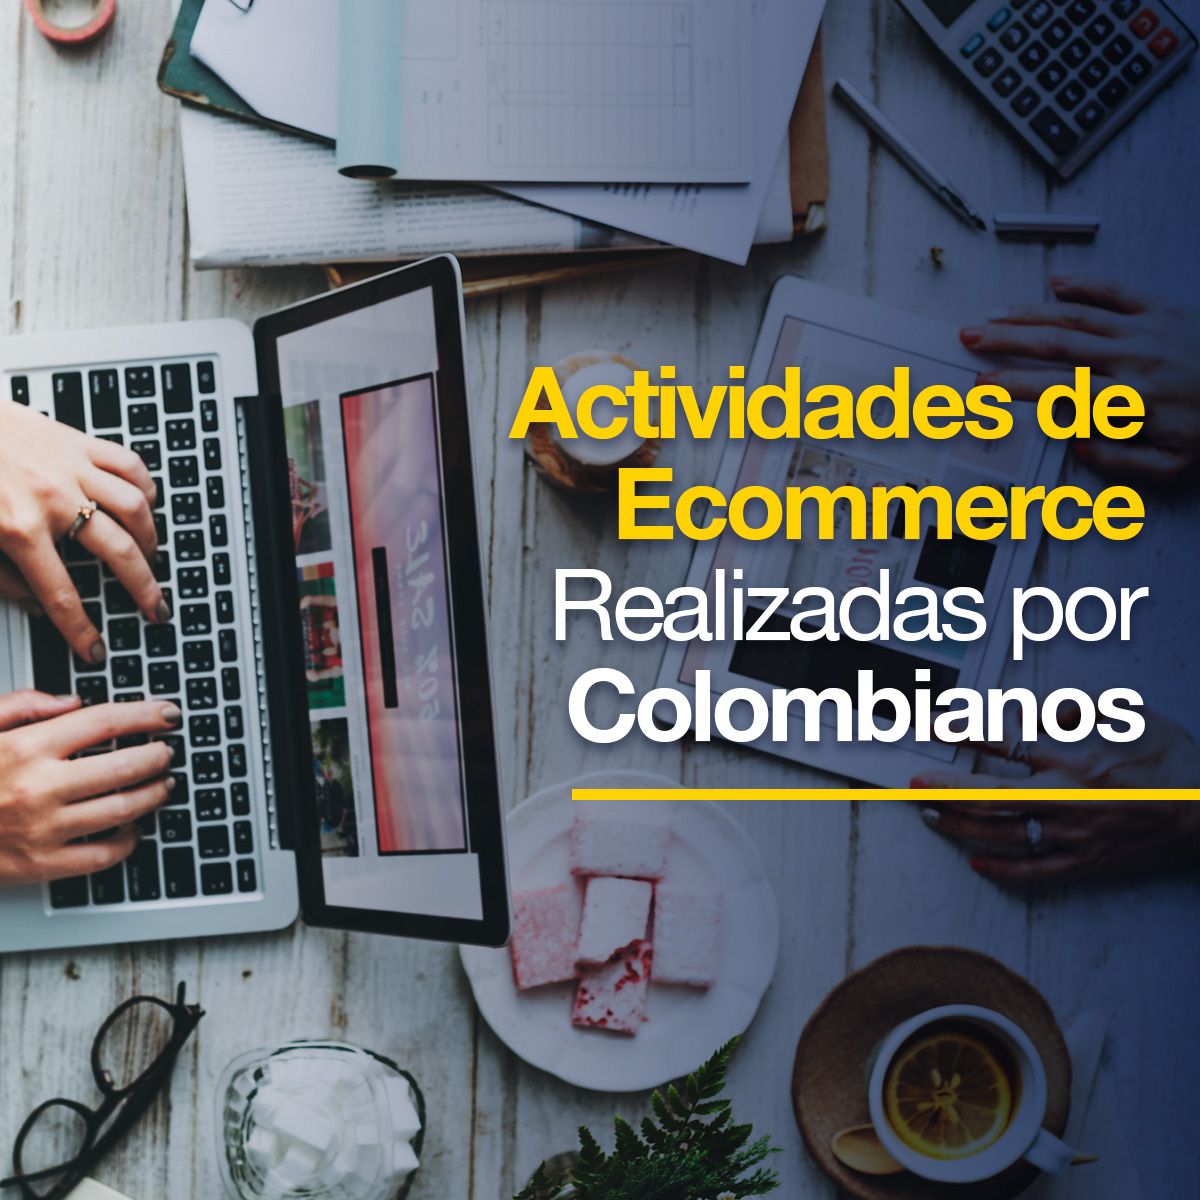 Actividades de Ecommerce Realizadas por Colombianos